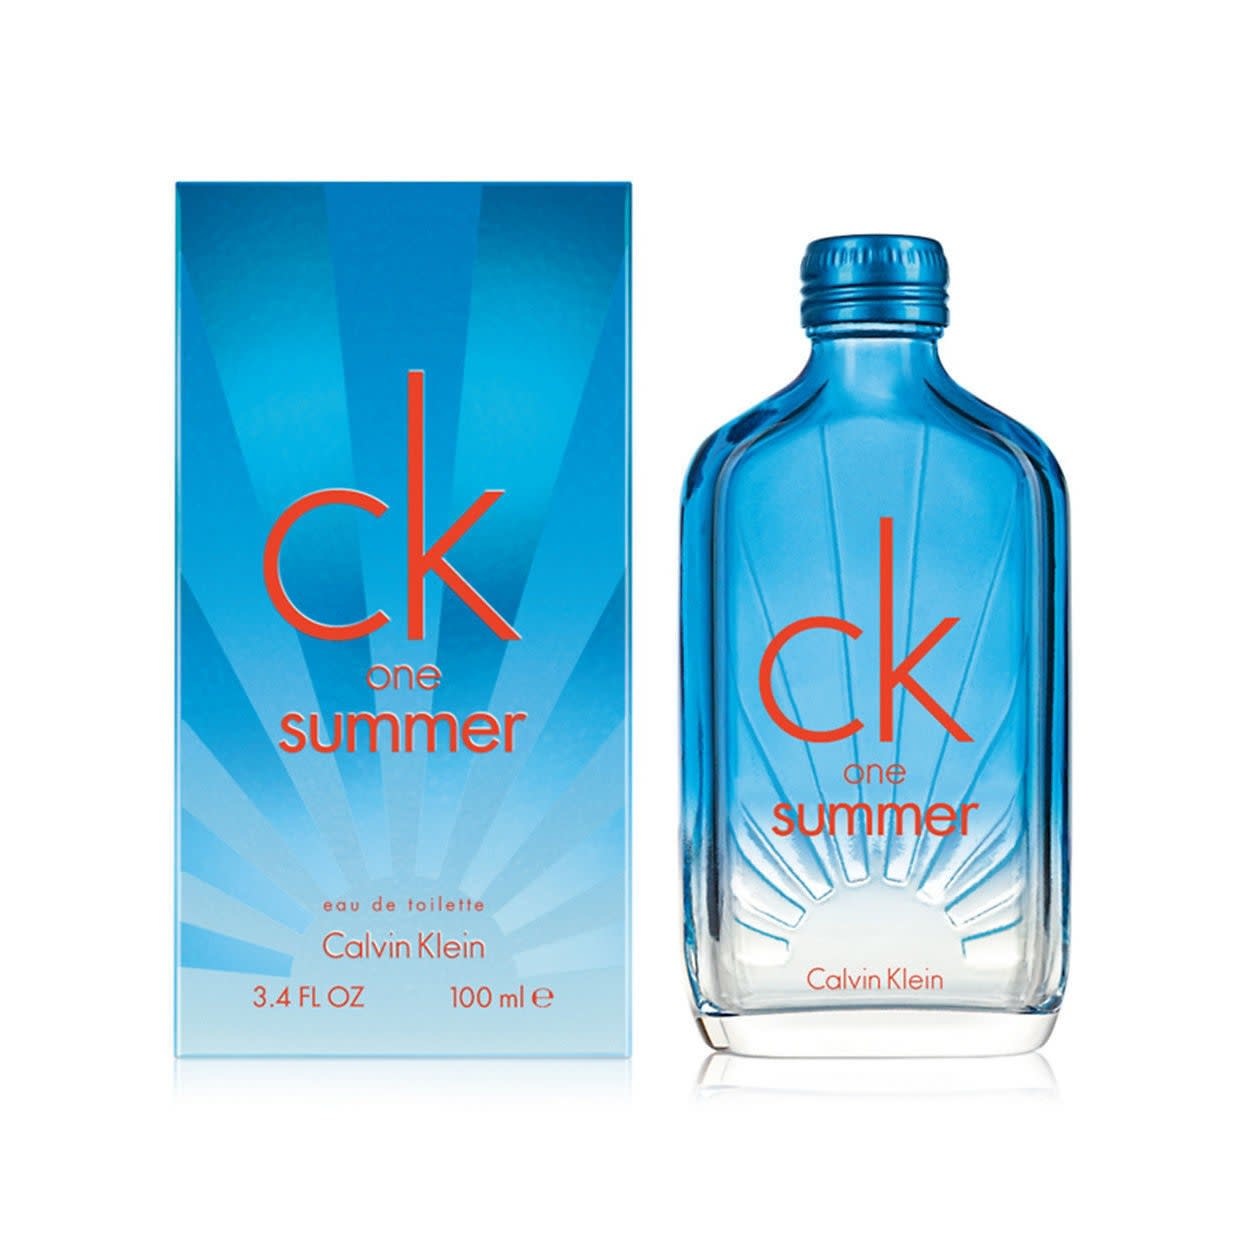 Le Parfumier - Calvin Klein Ck One Eau de Toilette - Le Parfumier